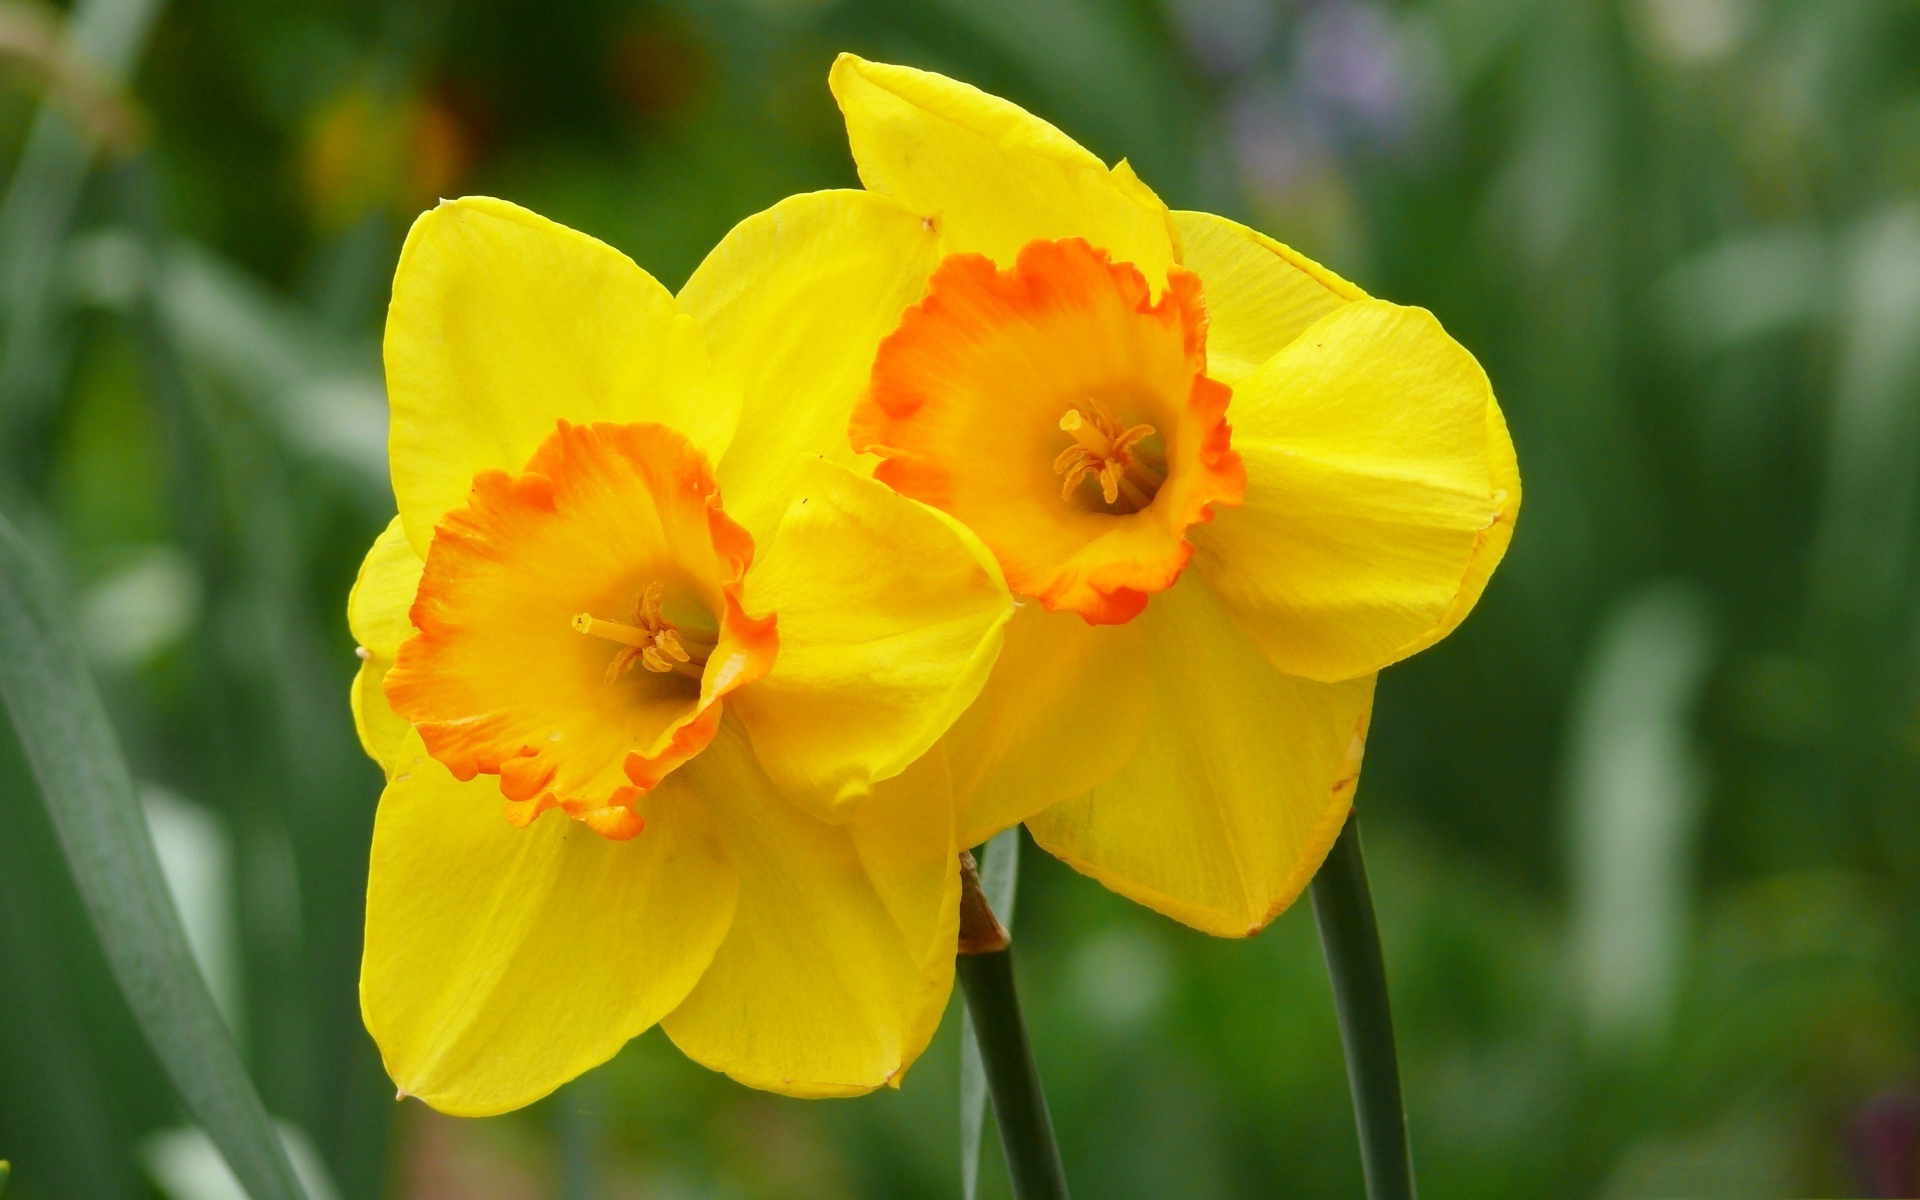      yellow-daffodils-hd.